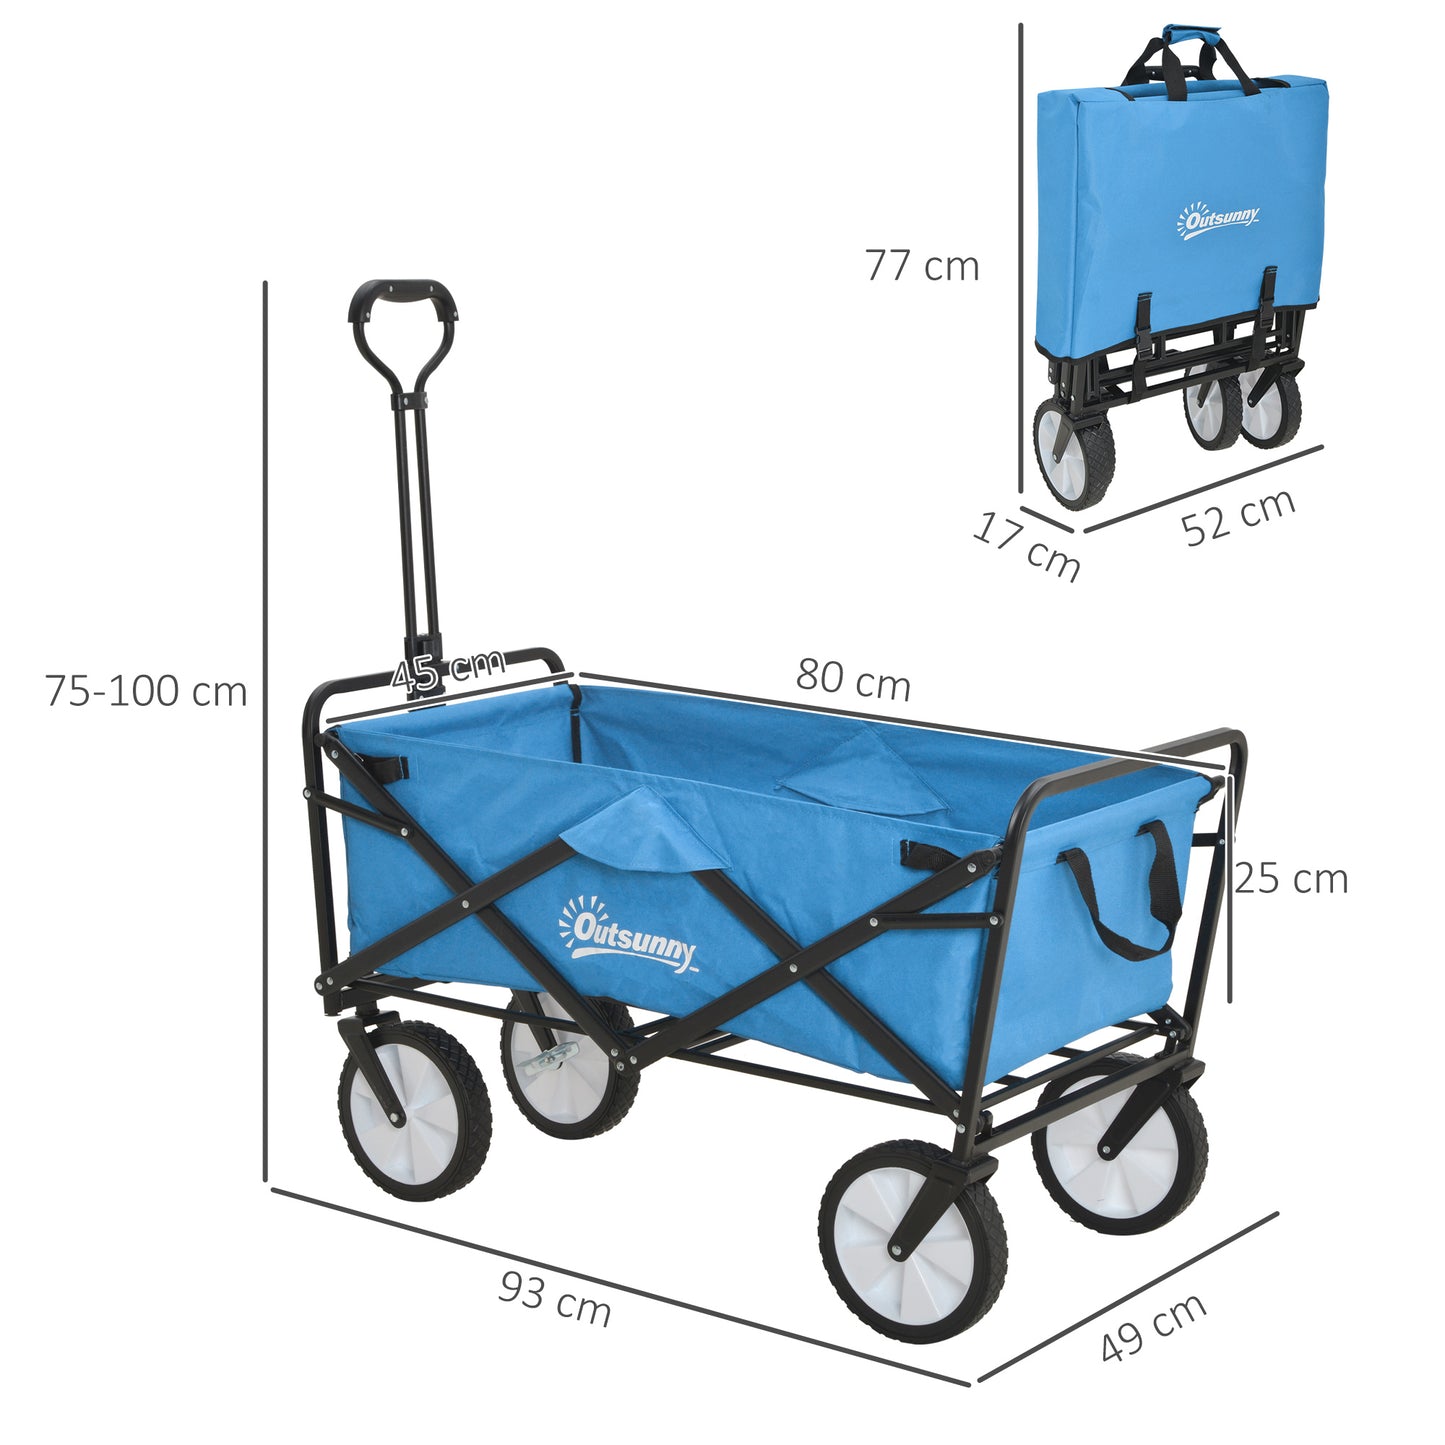 Outsunny Folding Garden Trolley Cart, Cargo Wagon Trailer for Beach & Outdoor Use, with Telescopic Handle, Blue